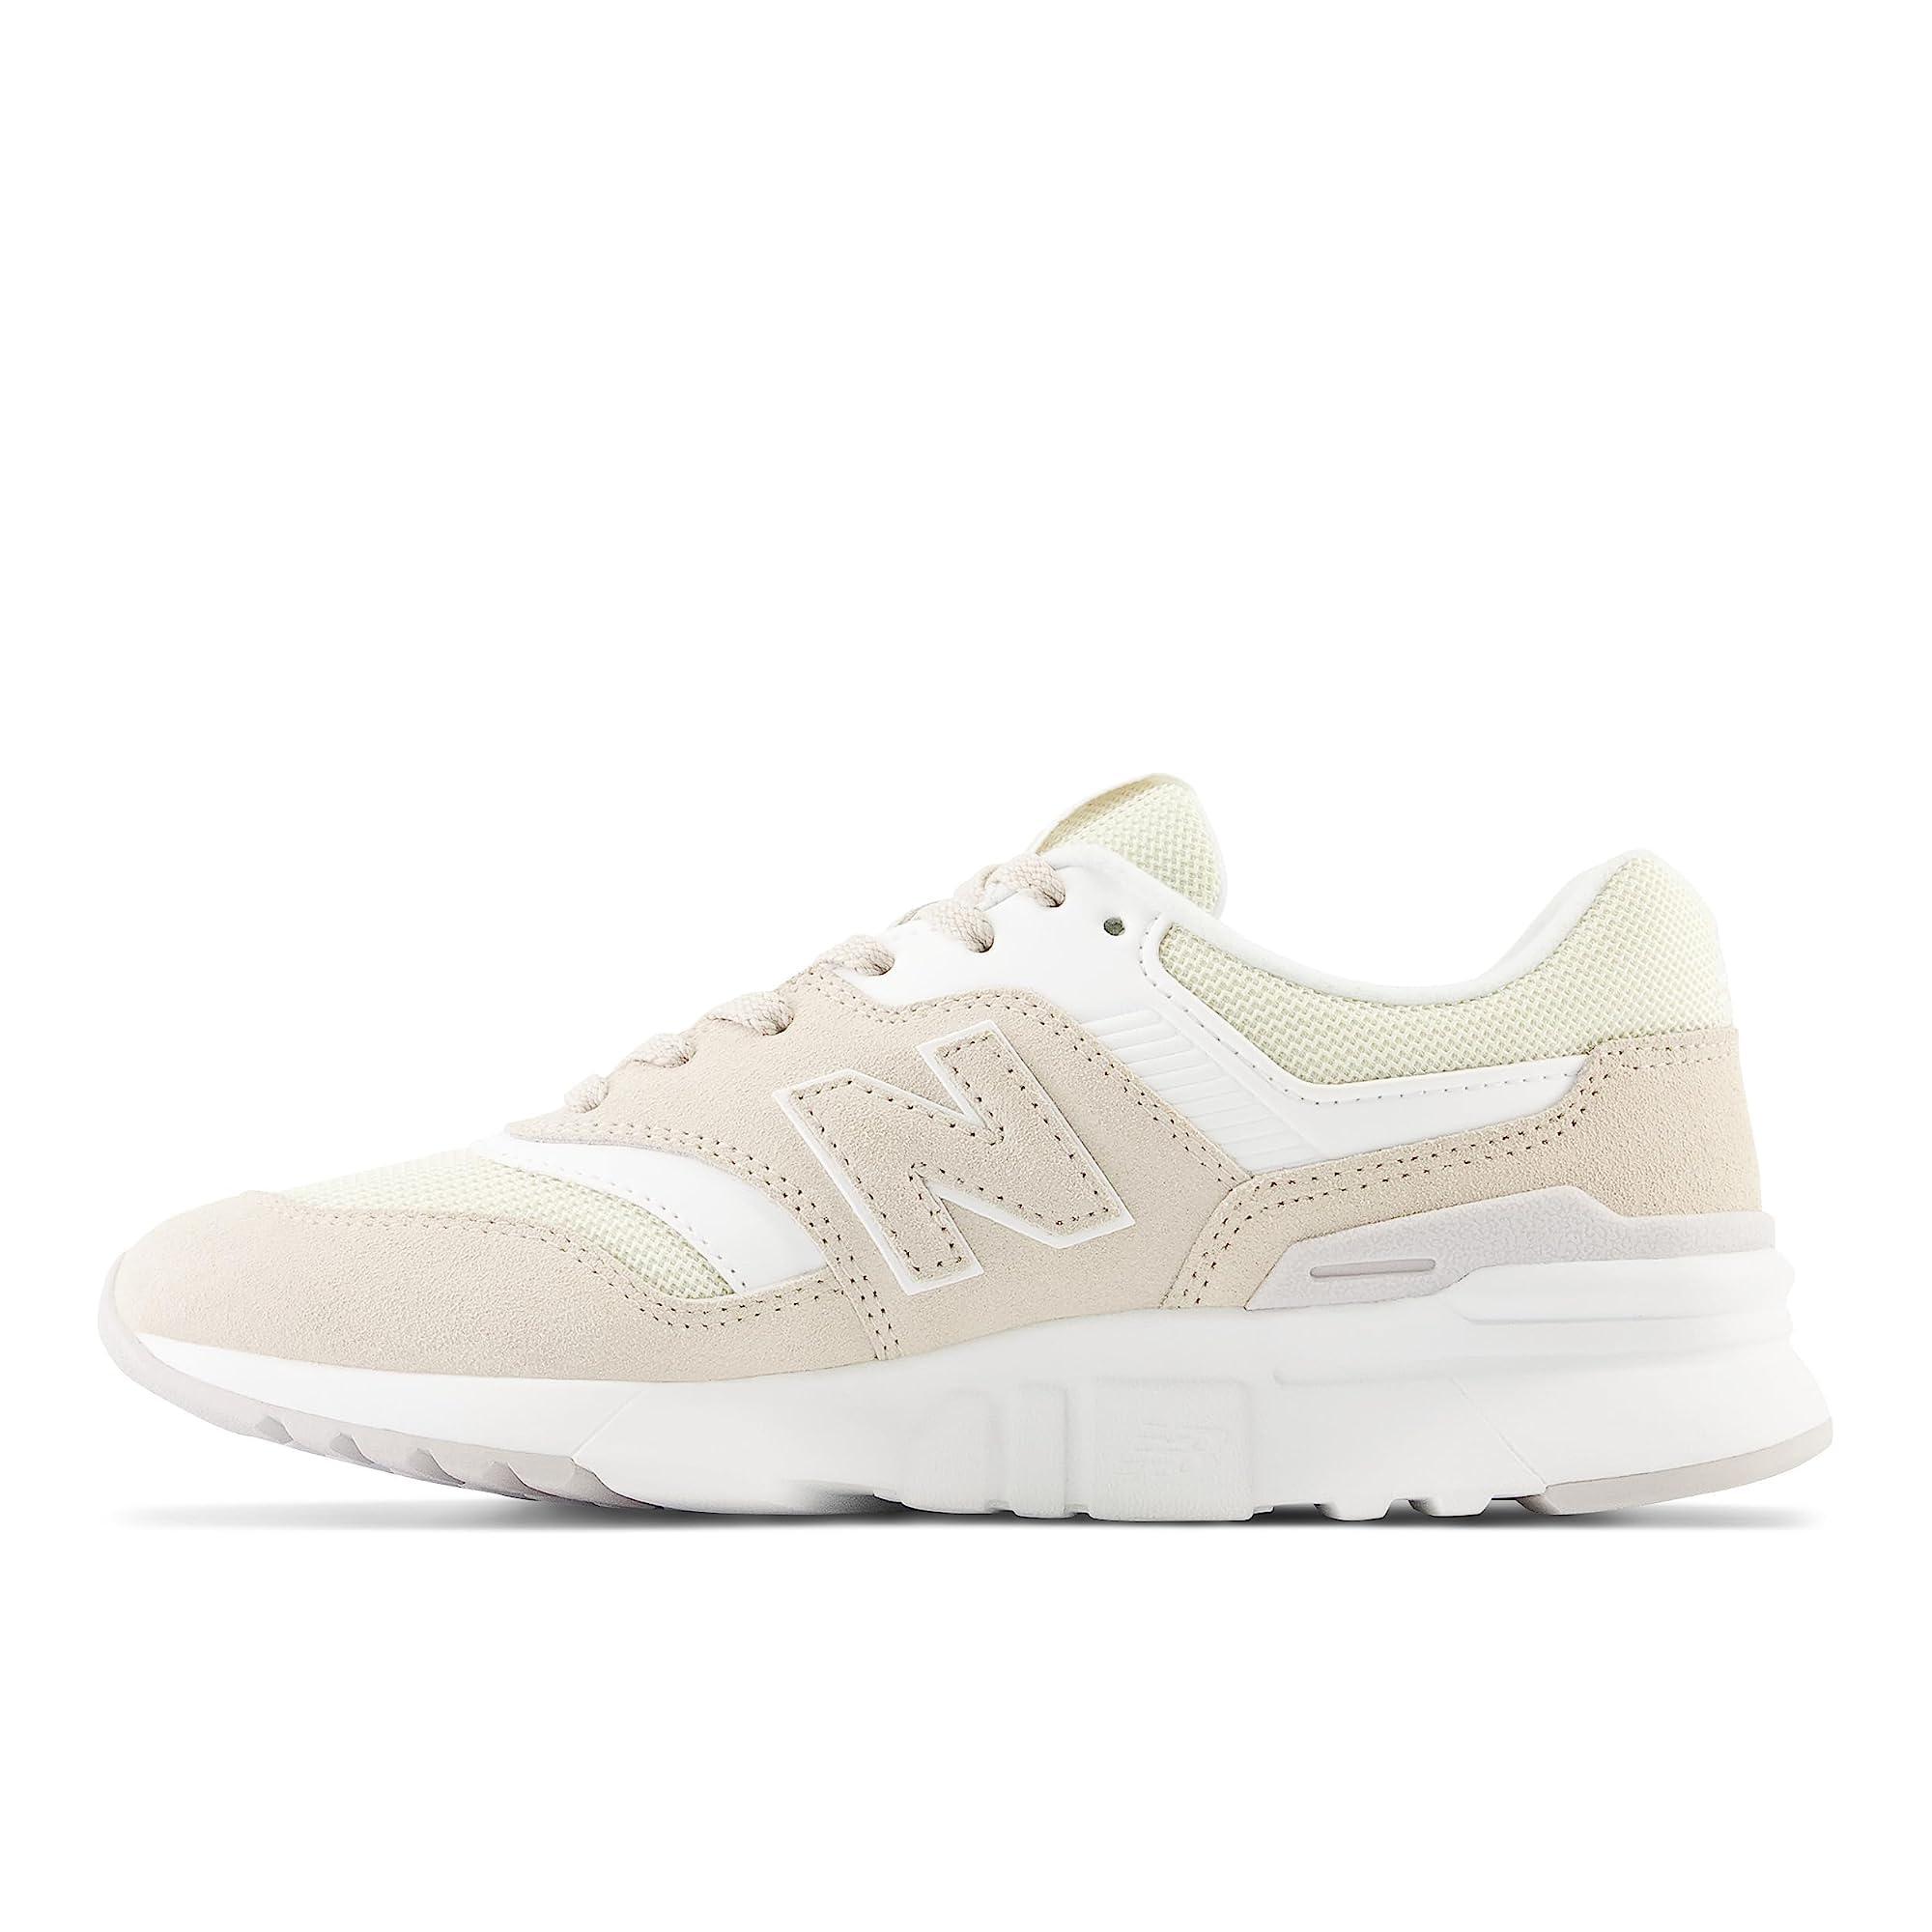 New Balance 997h V1 Sneaker in White | Lyst